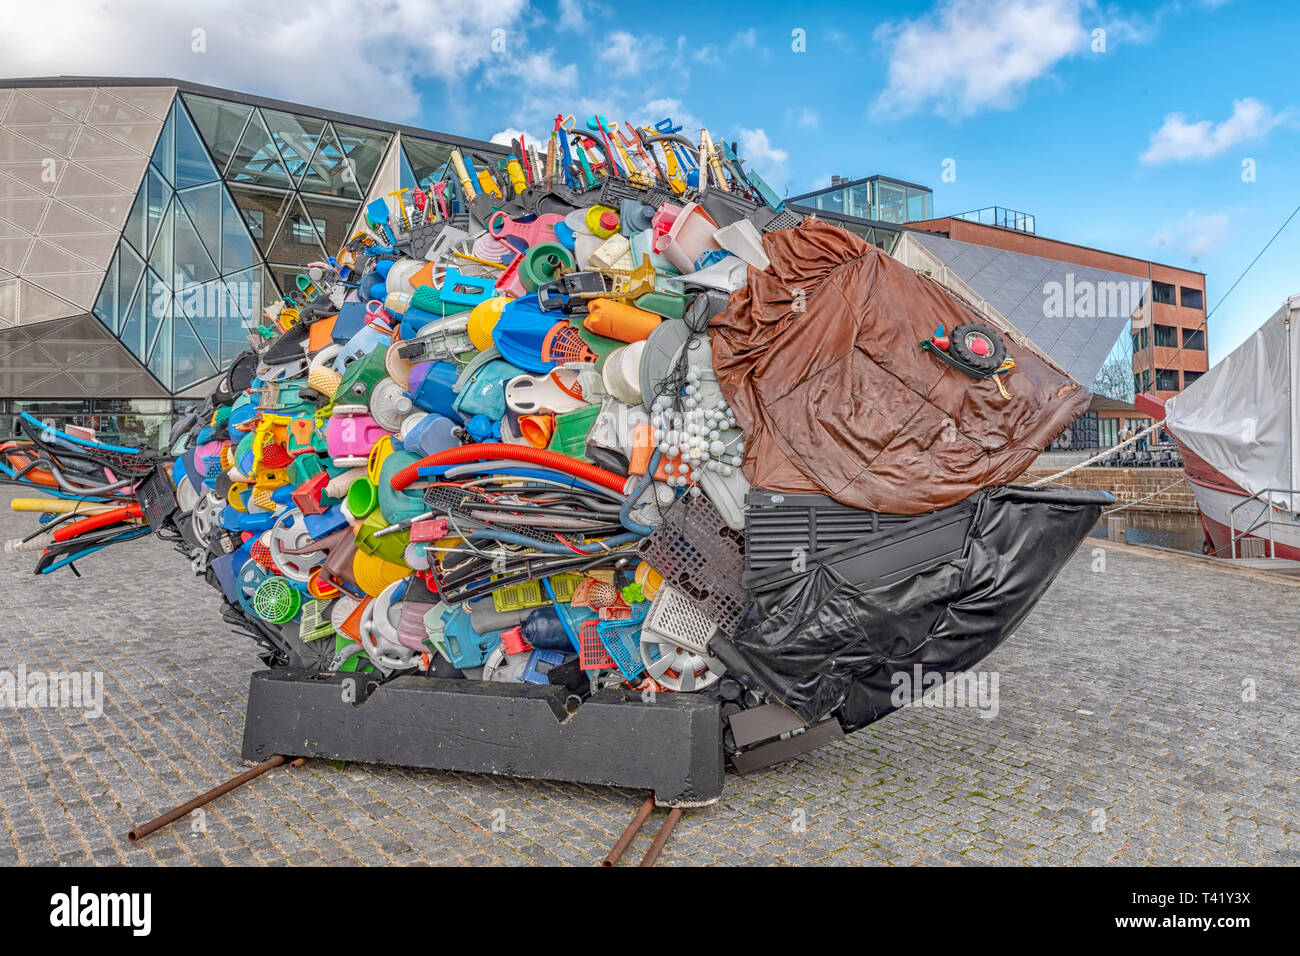 Elseneur, Danemark - Mars 24, 2019 : Poisson sculpture réalisée à partir de déchets trouvés dans la mer, l'Oresund entre le Danemark et la Suède, situé à Helsingor Banque D'Images